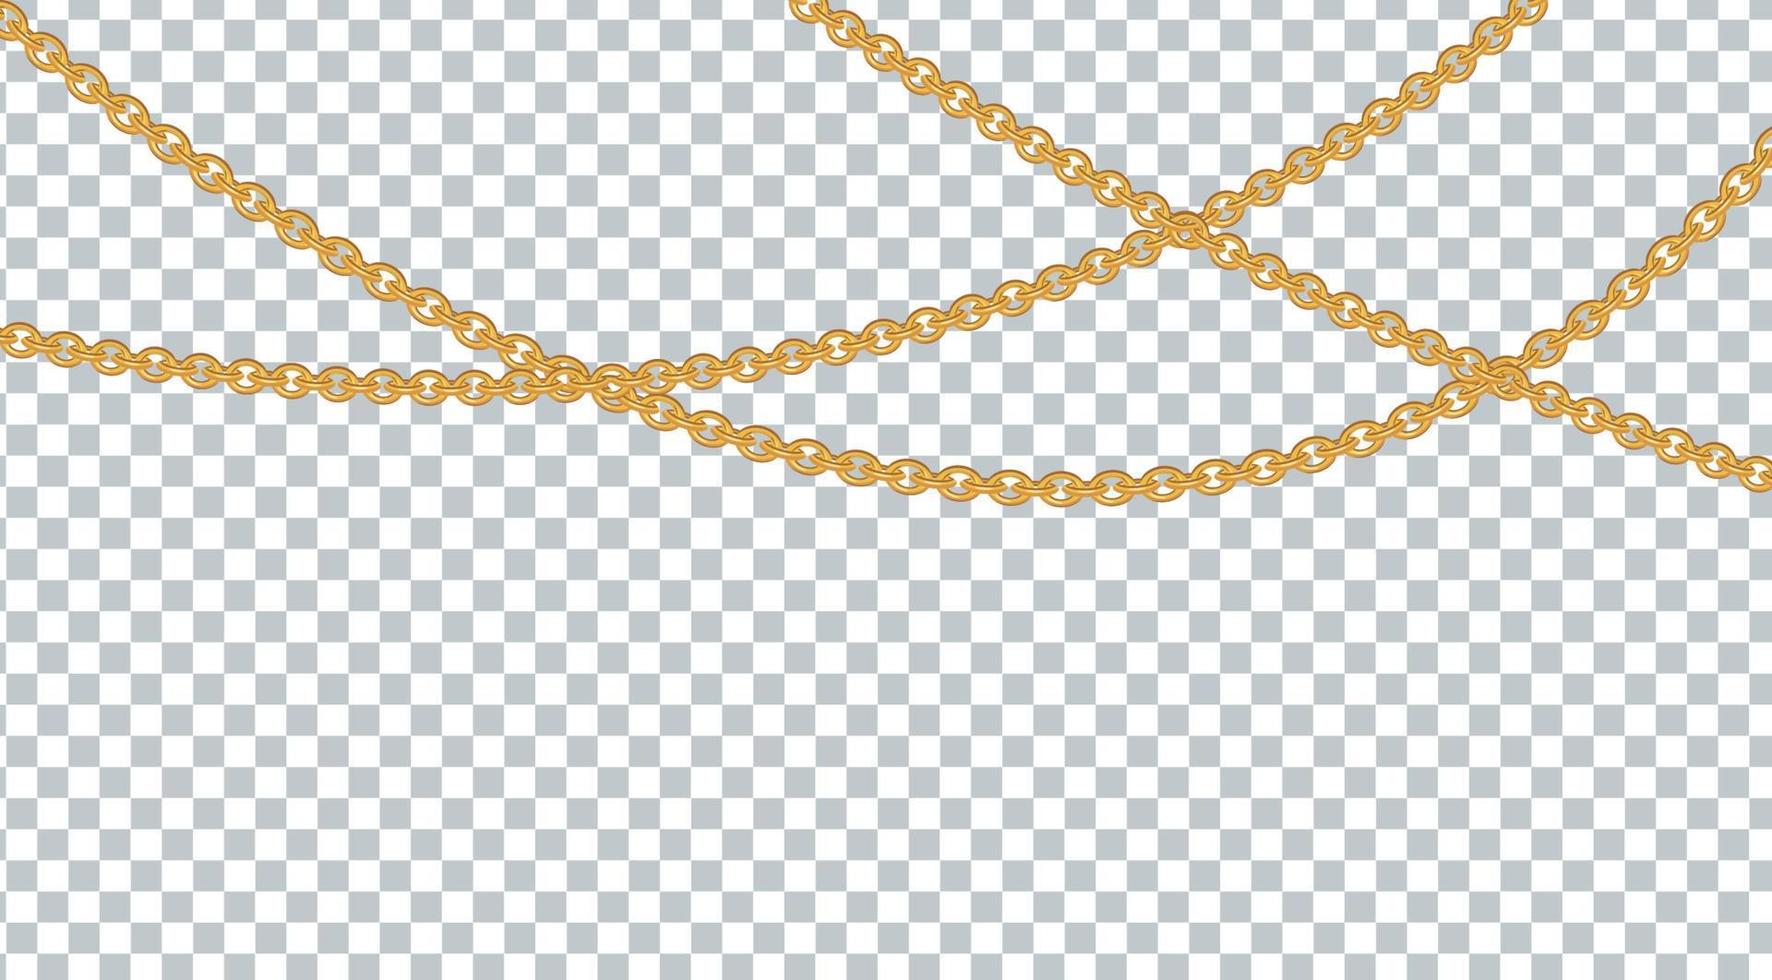 Elemento decorativo abstracto de cadena de color dorado o bronce. ilustración vectorial vector